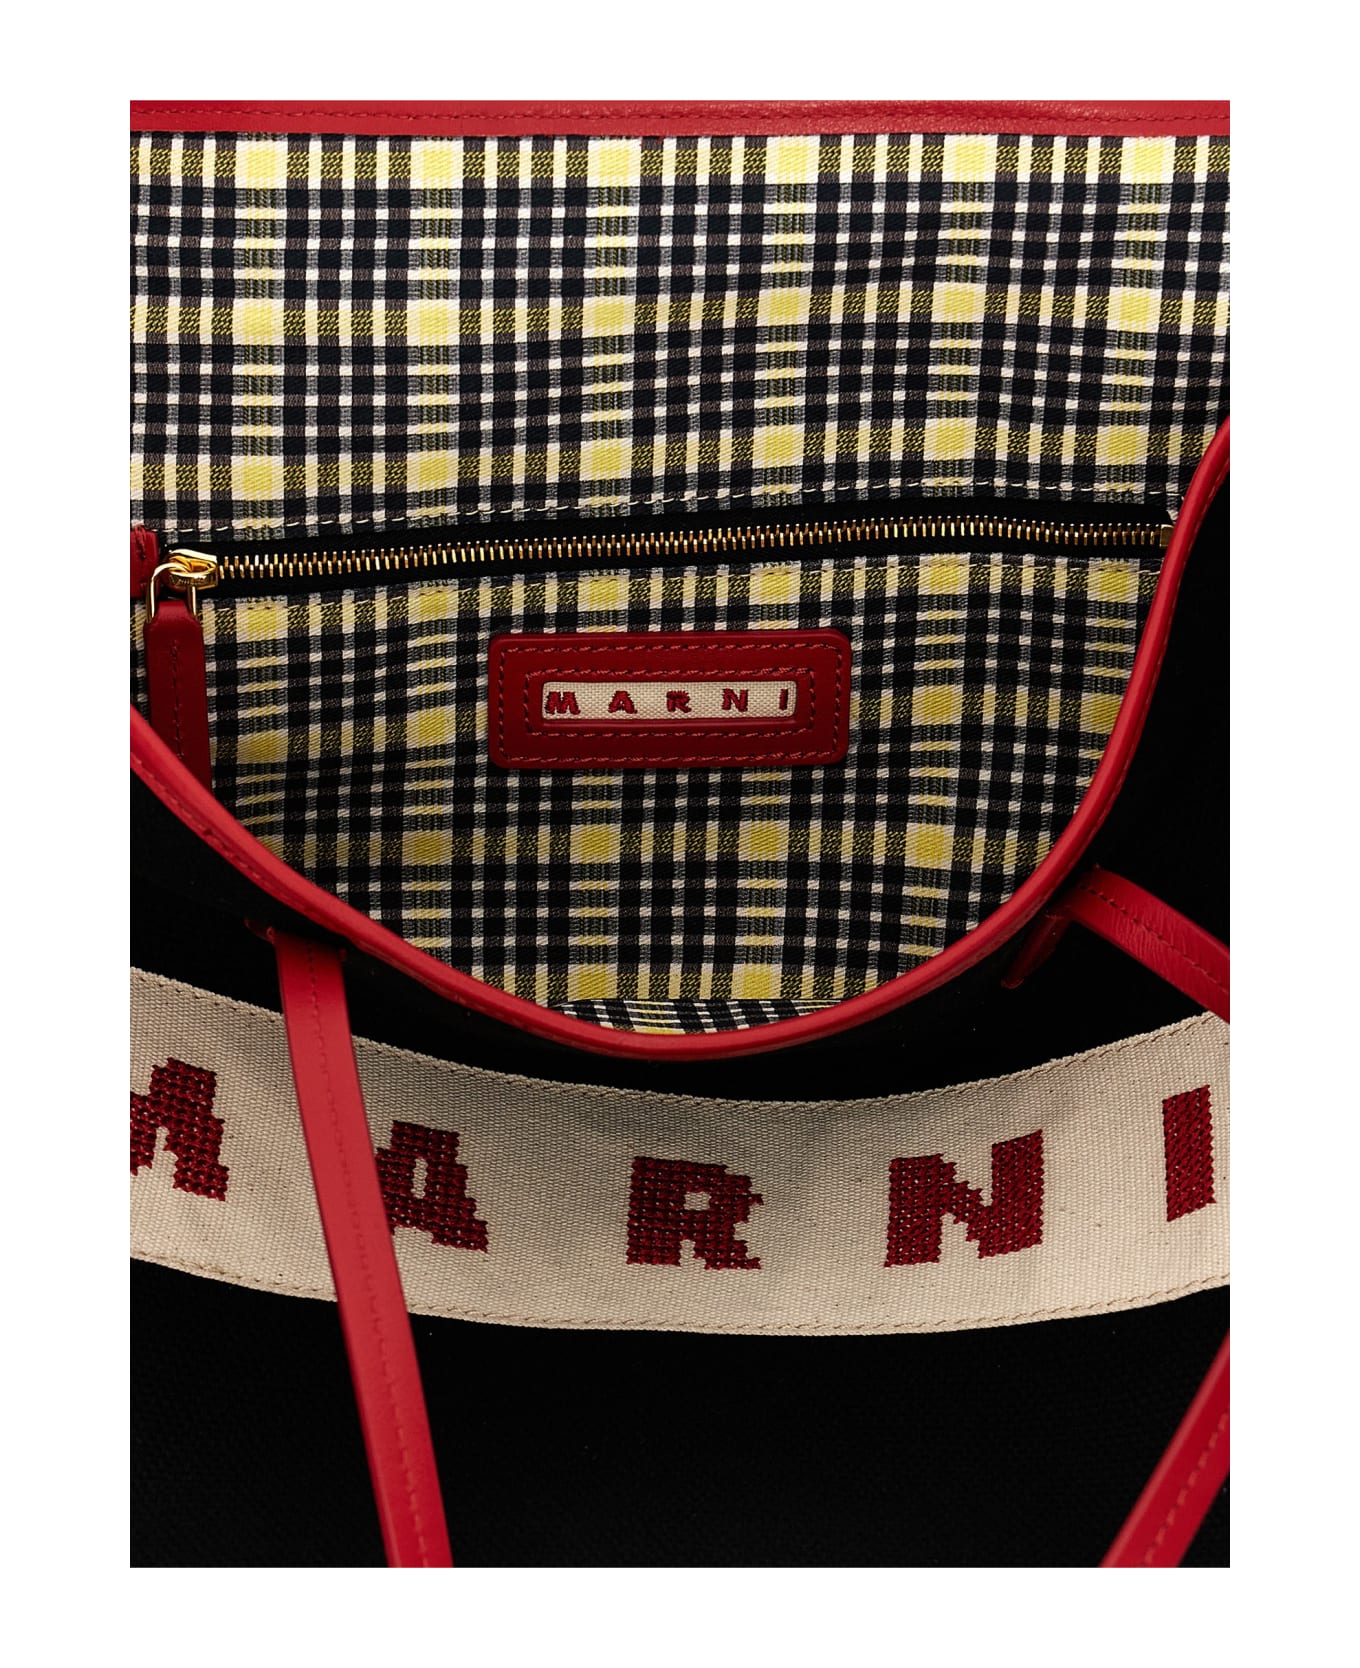 Marni Logo Canvas Shopping Bag - Multicolor